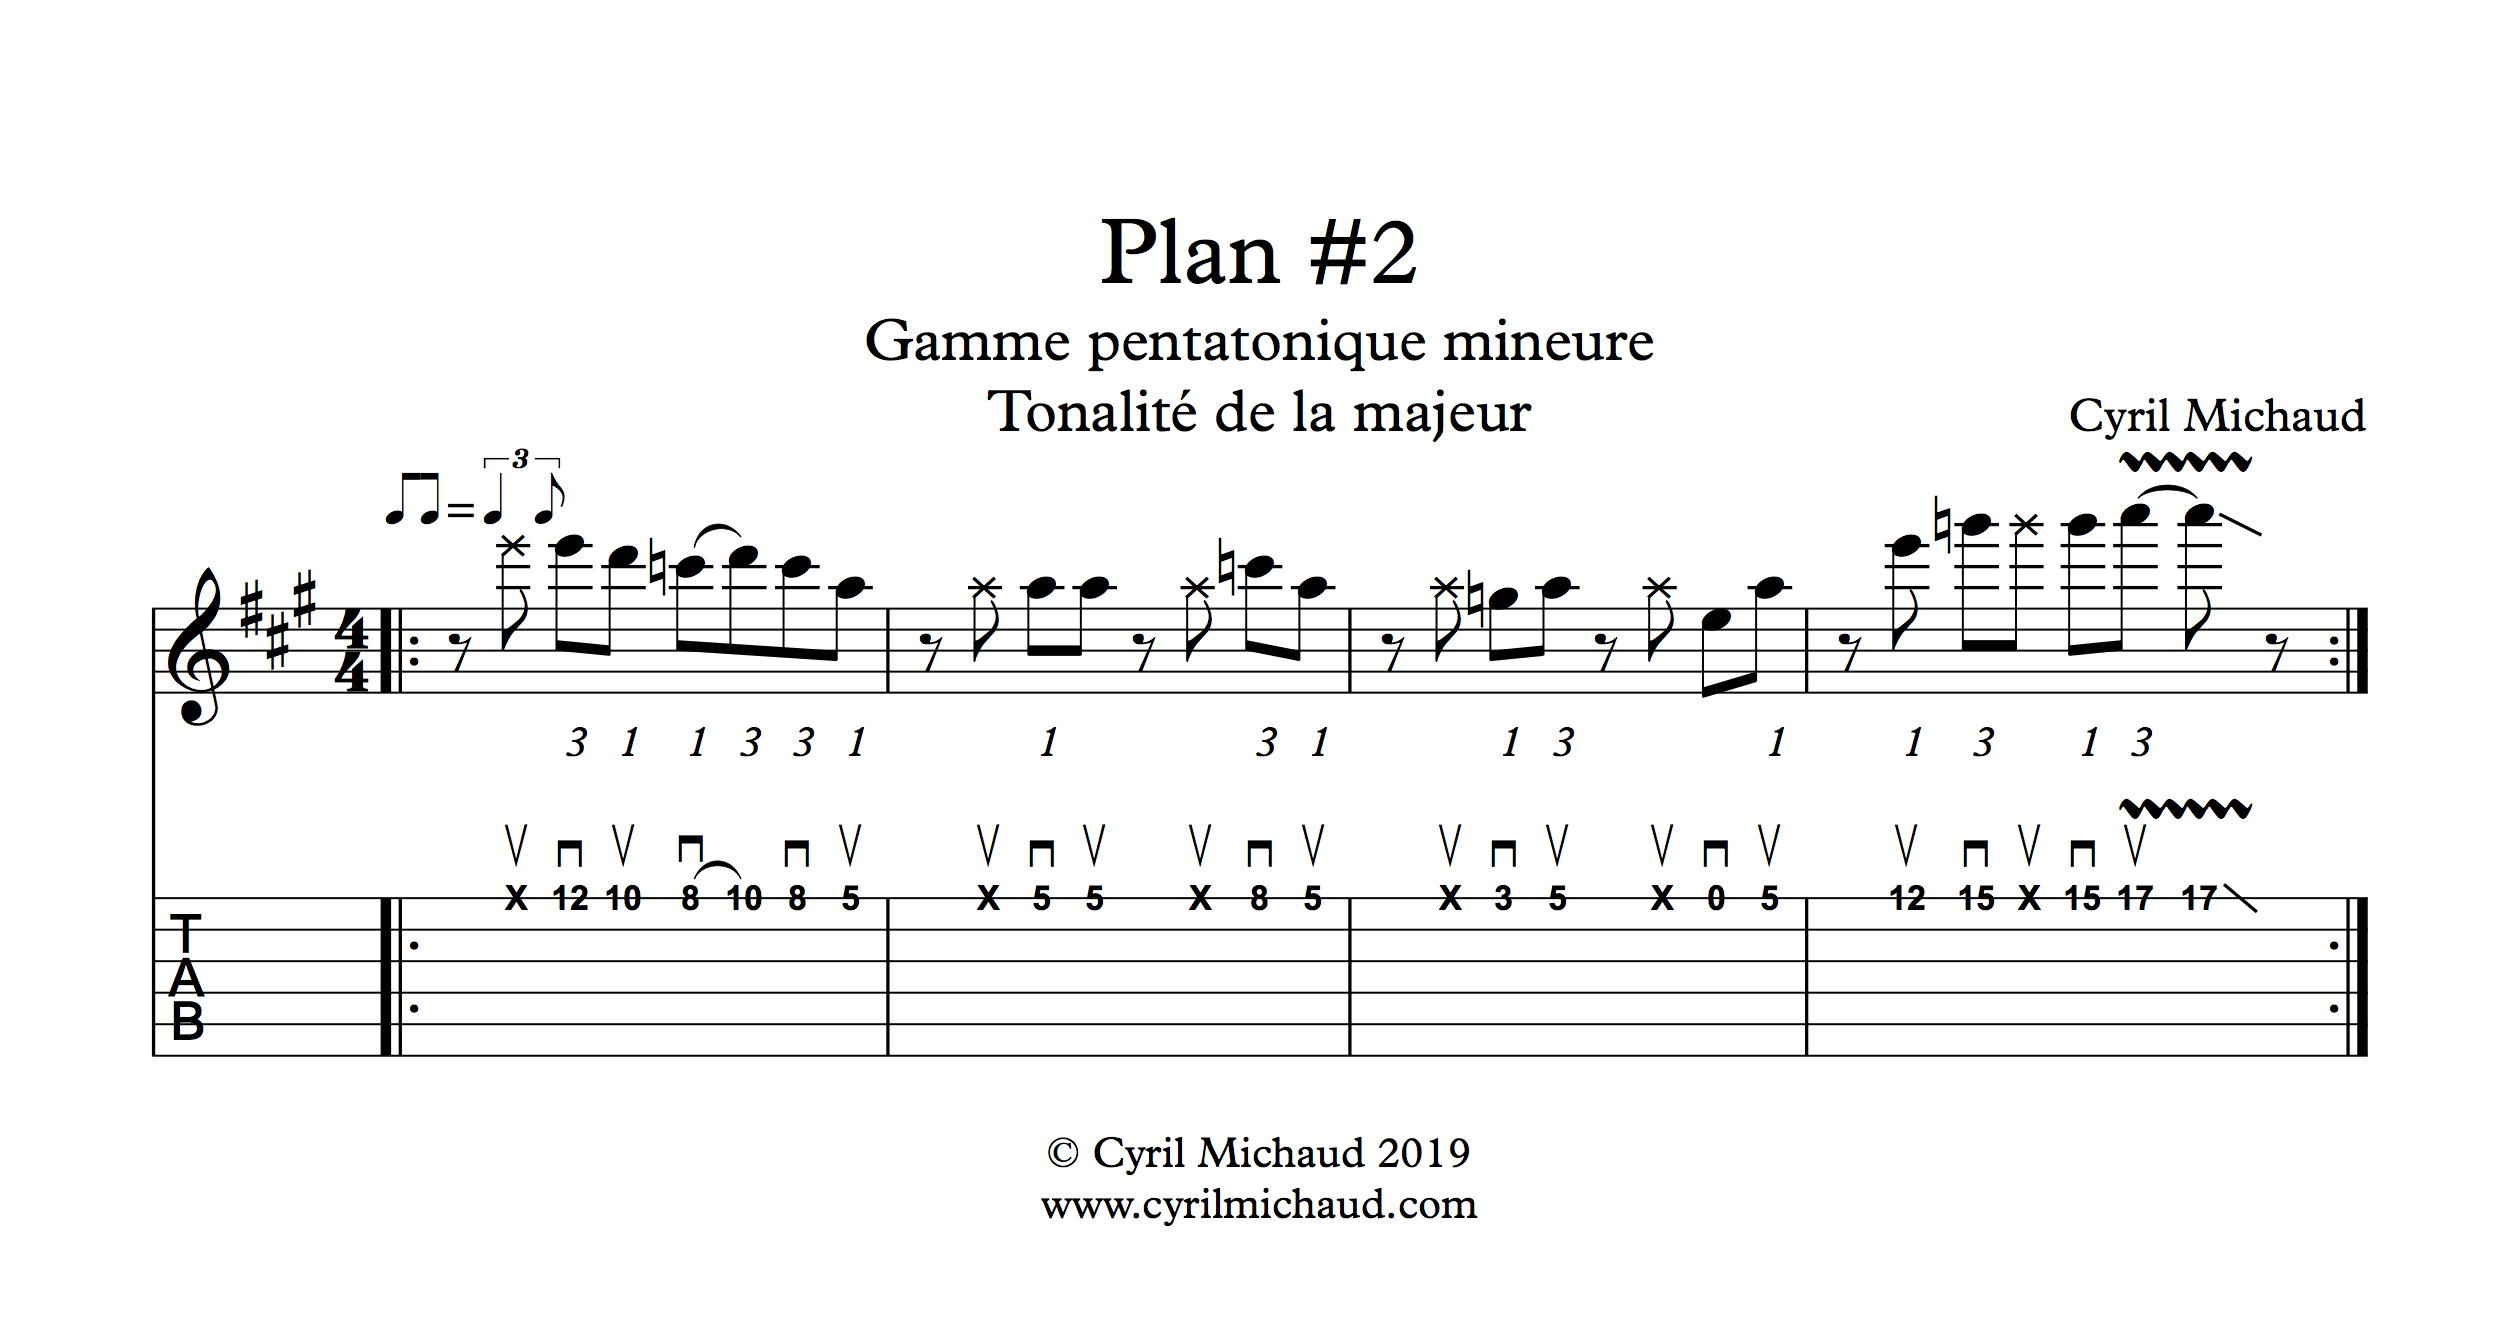 Plan blues sur la gamme pentatonique mineure (2)